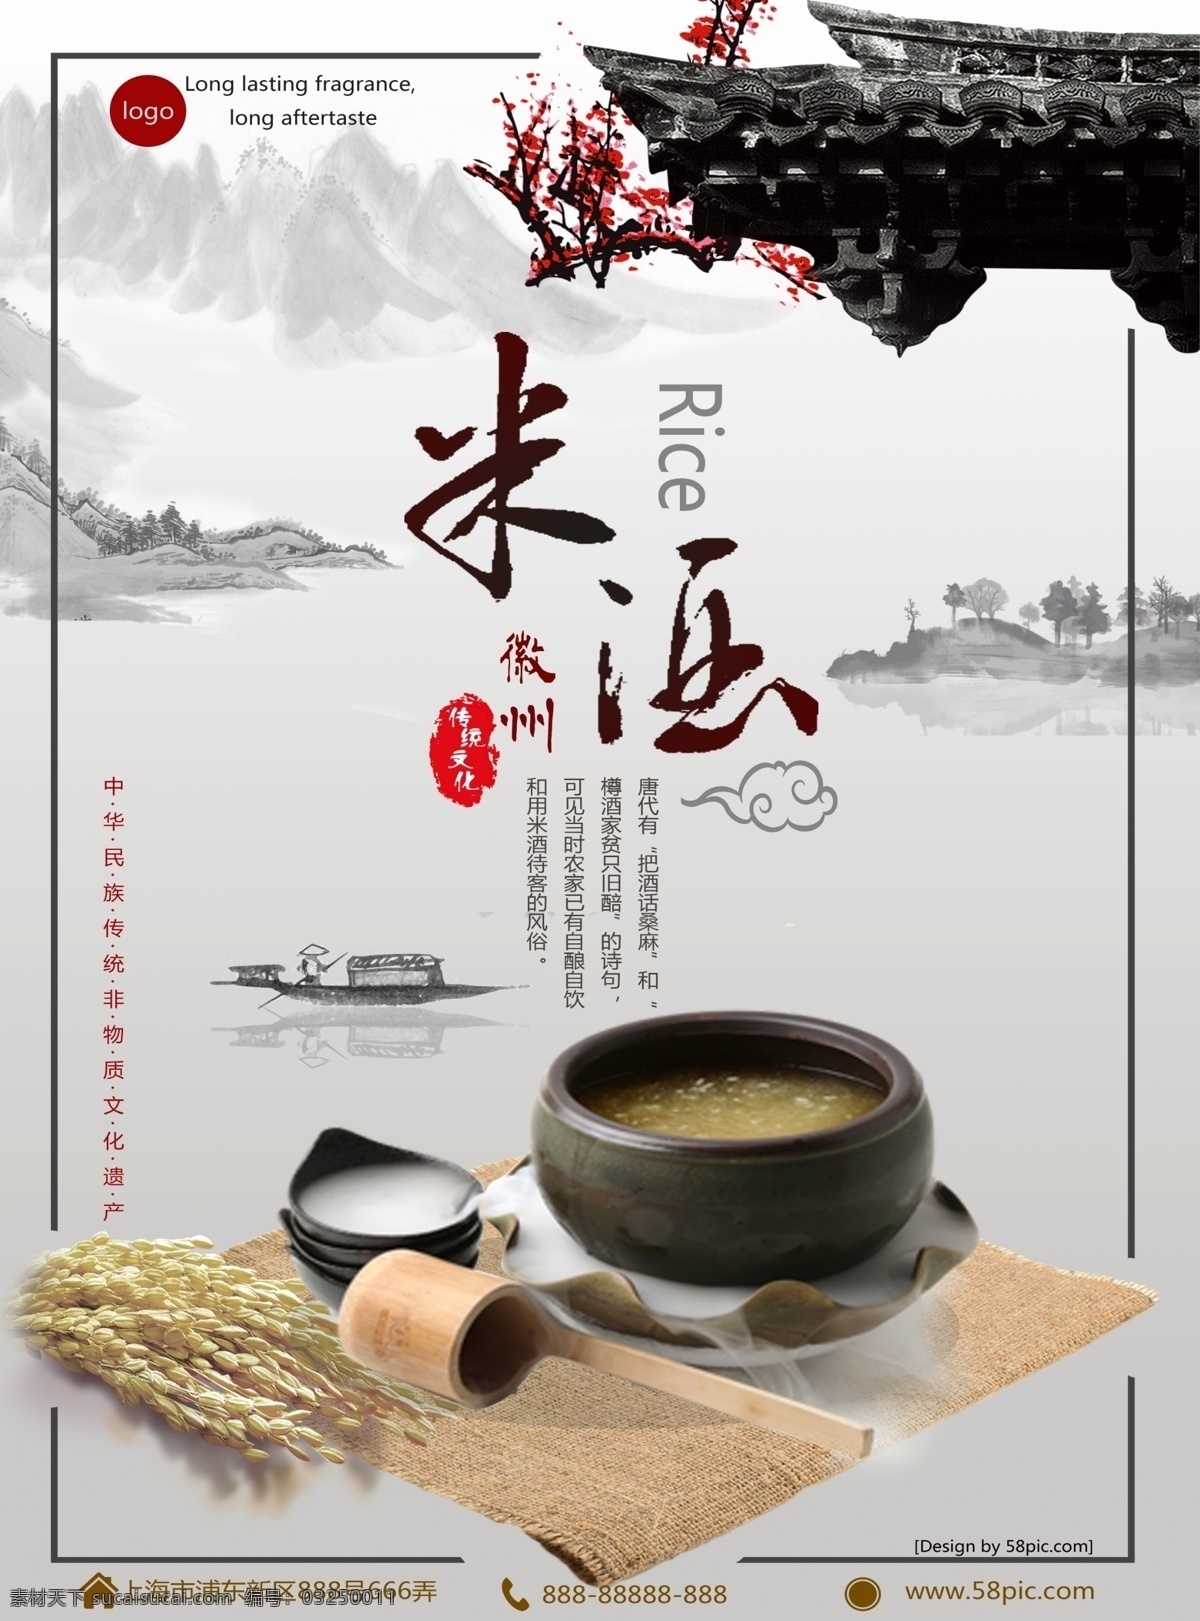 冬季 美食 米酒 促销 海报 促销海报 稻草 米酒海报 热饮海报